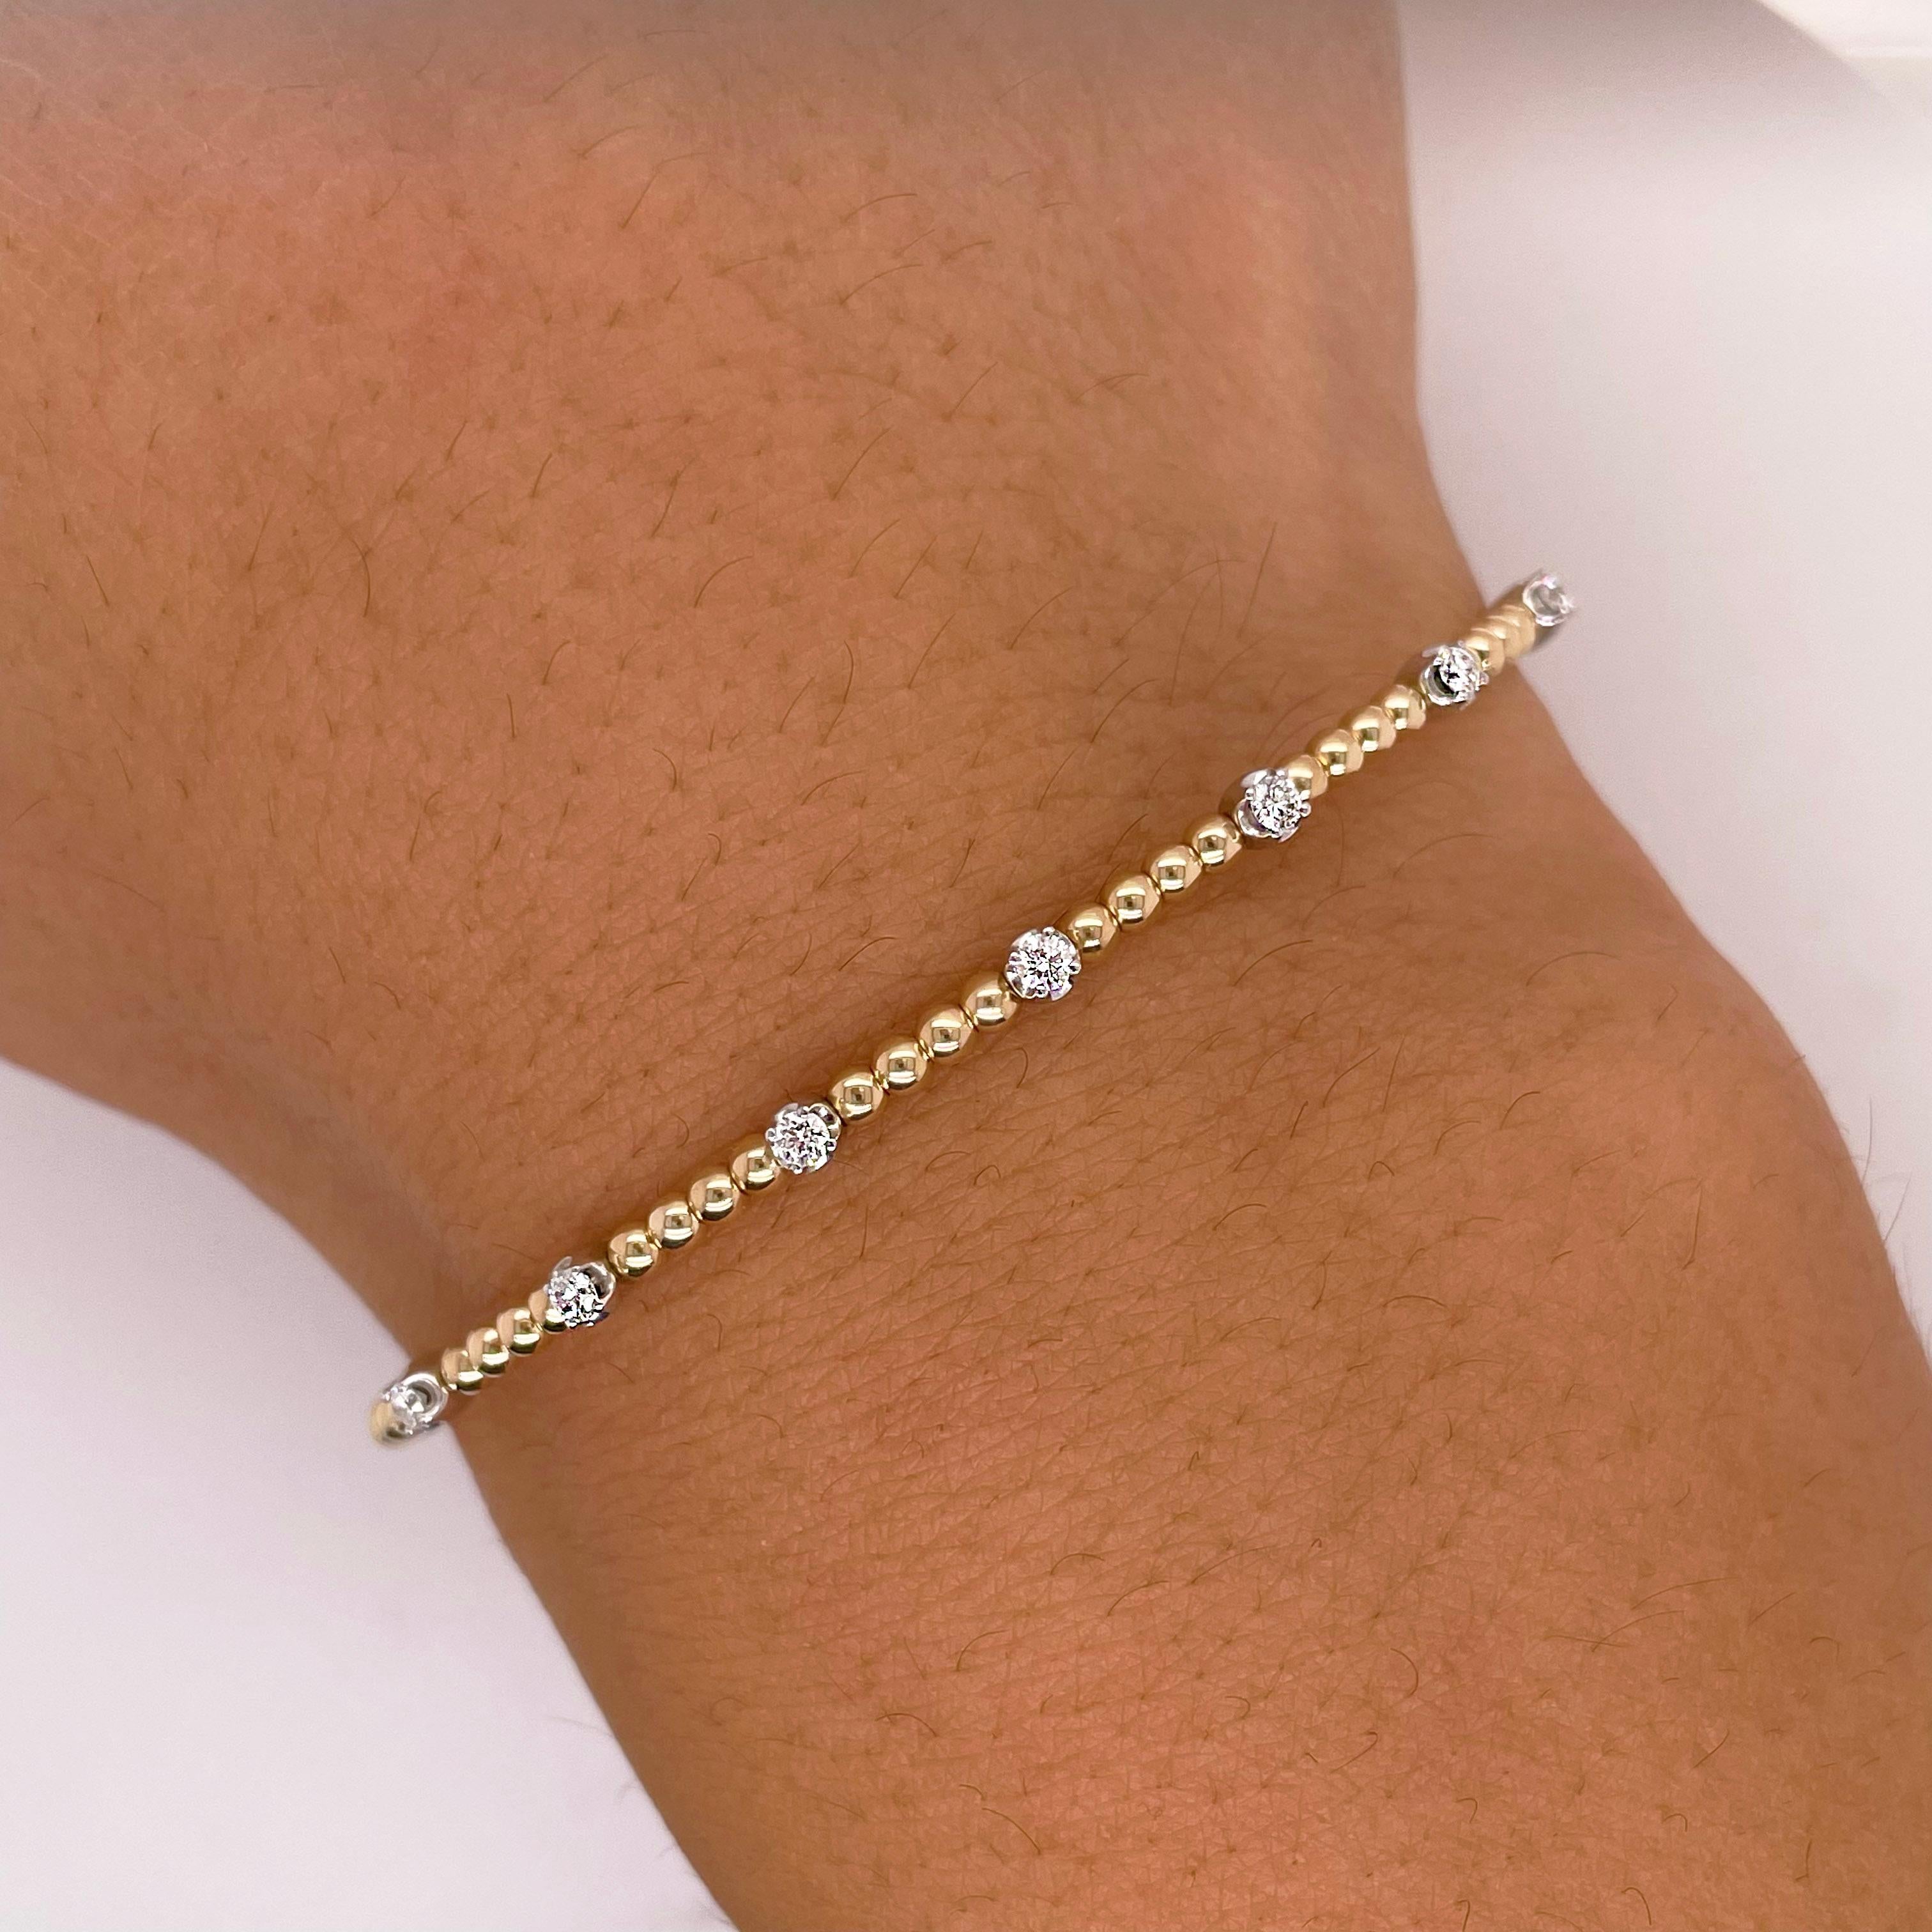 Vous trouverez ci-dessous les détails de ce magnifique bracelet :
Type de bracelet : Manchette, Bracelet
Qualité du métal : Or blanc-jaune 14K
Longueur : 6 cm (6.5 pouces)
Largeur : 2.25 mm
Fermoir : Bracelet flexible
Forme du diamant : Brilliante